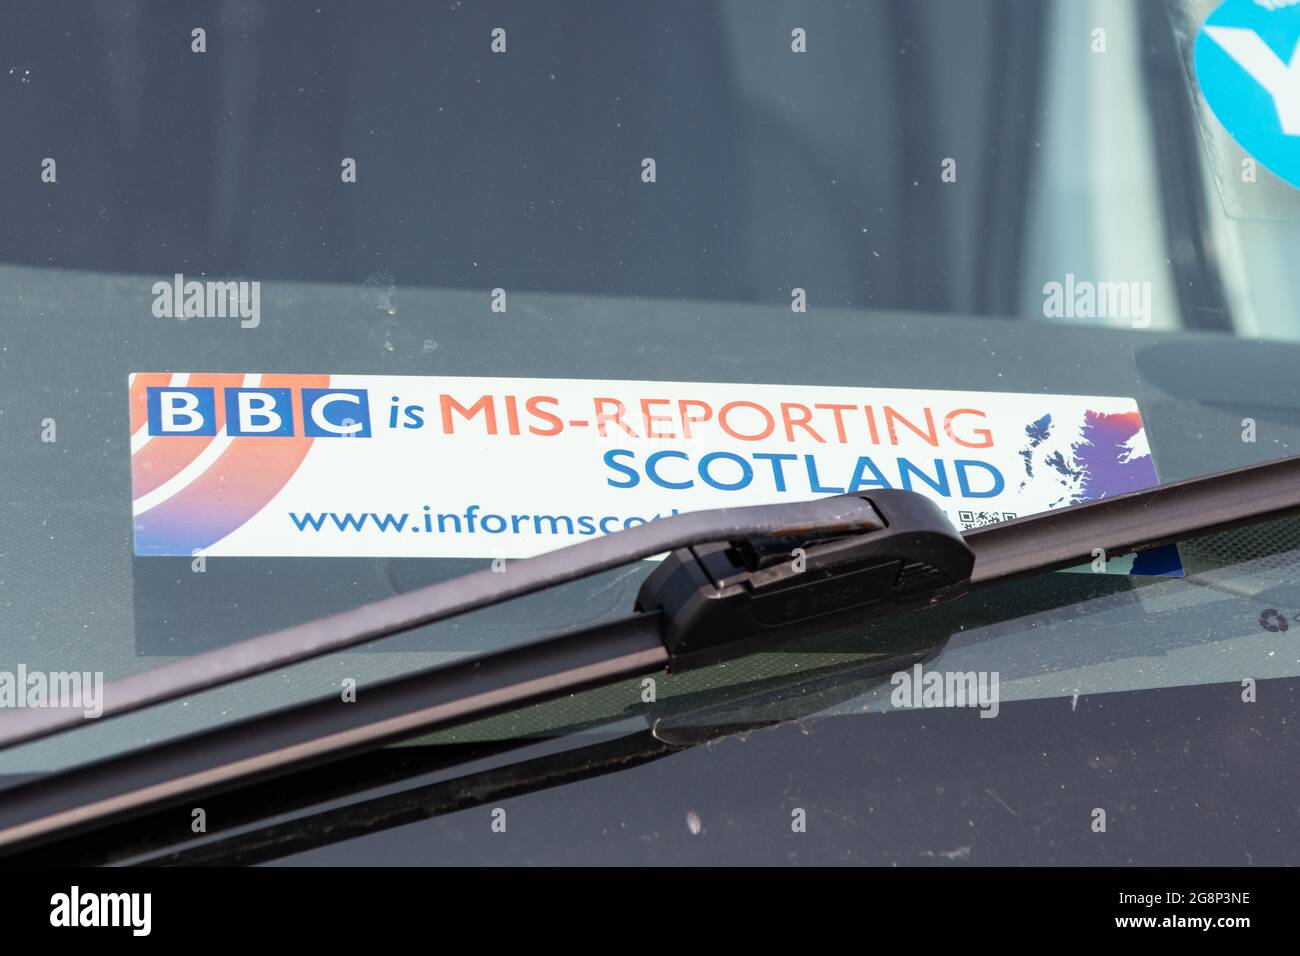 Informate Scotland: Adesivo "BBC is Mis-reporting Scotland" in una campagna contro le bias della BBC Scotland - Scozia, Regno Unito Foto Stock